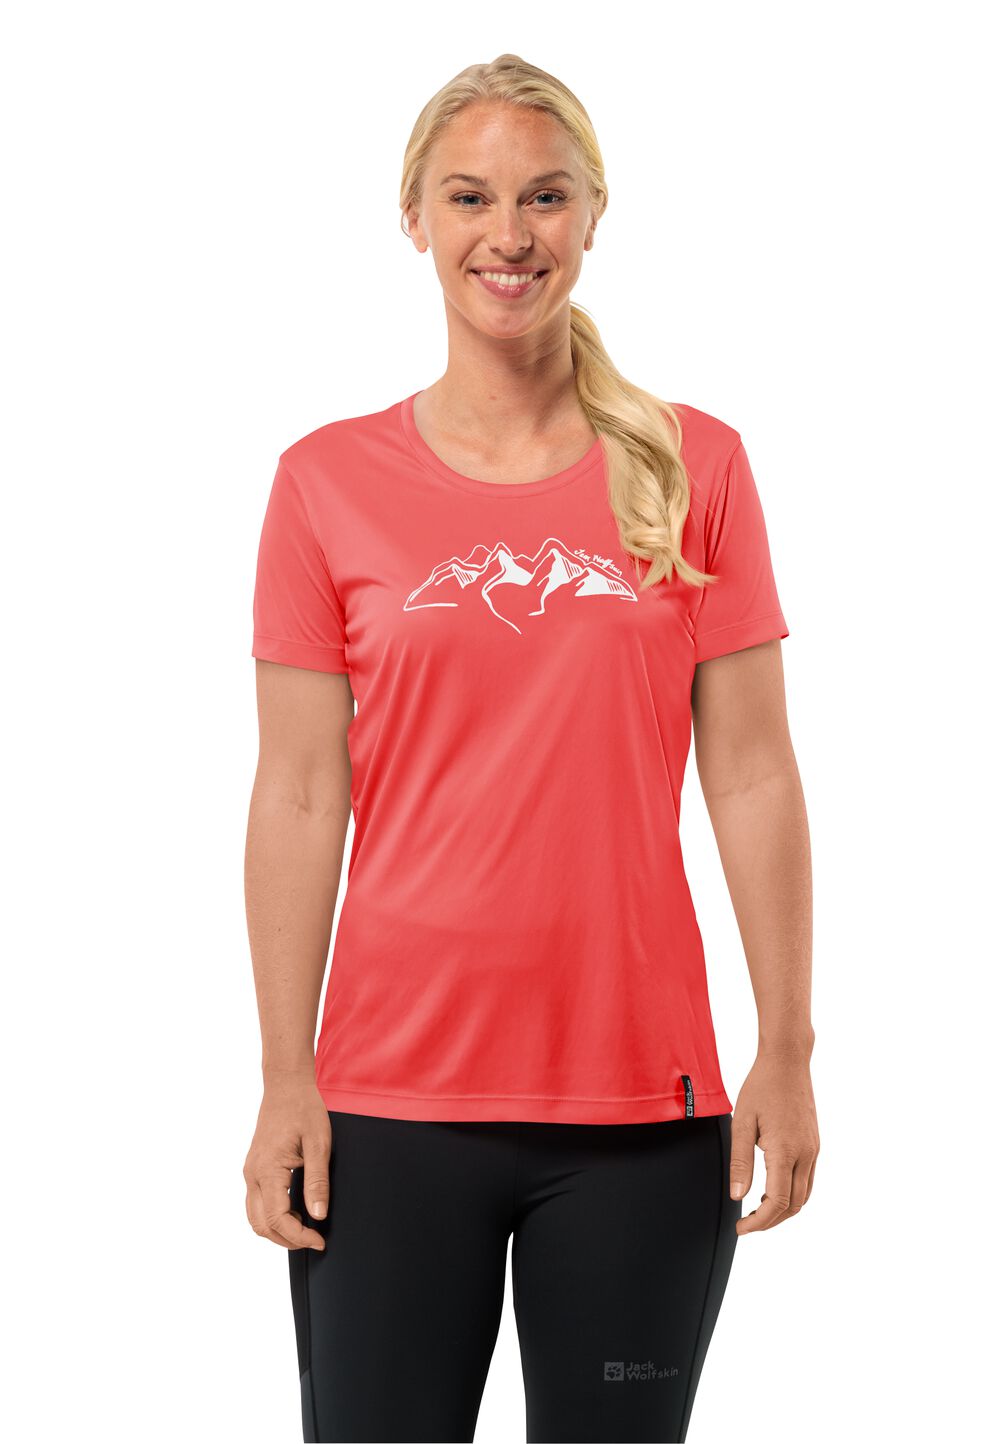 Jack Wolfskin Funktionsshirt Damen Peak Graphic T-Shirt Women XS rot vibrant red von Jack Wolfskin